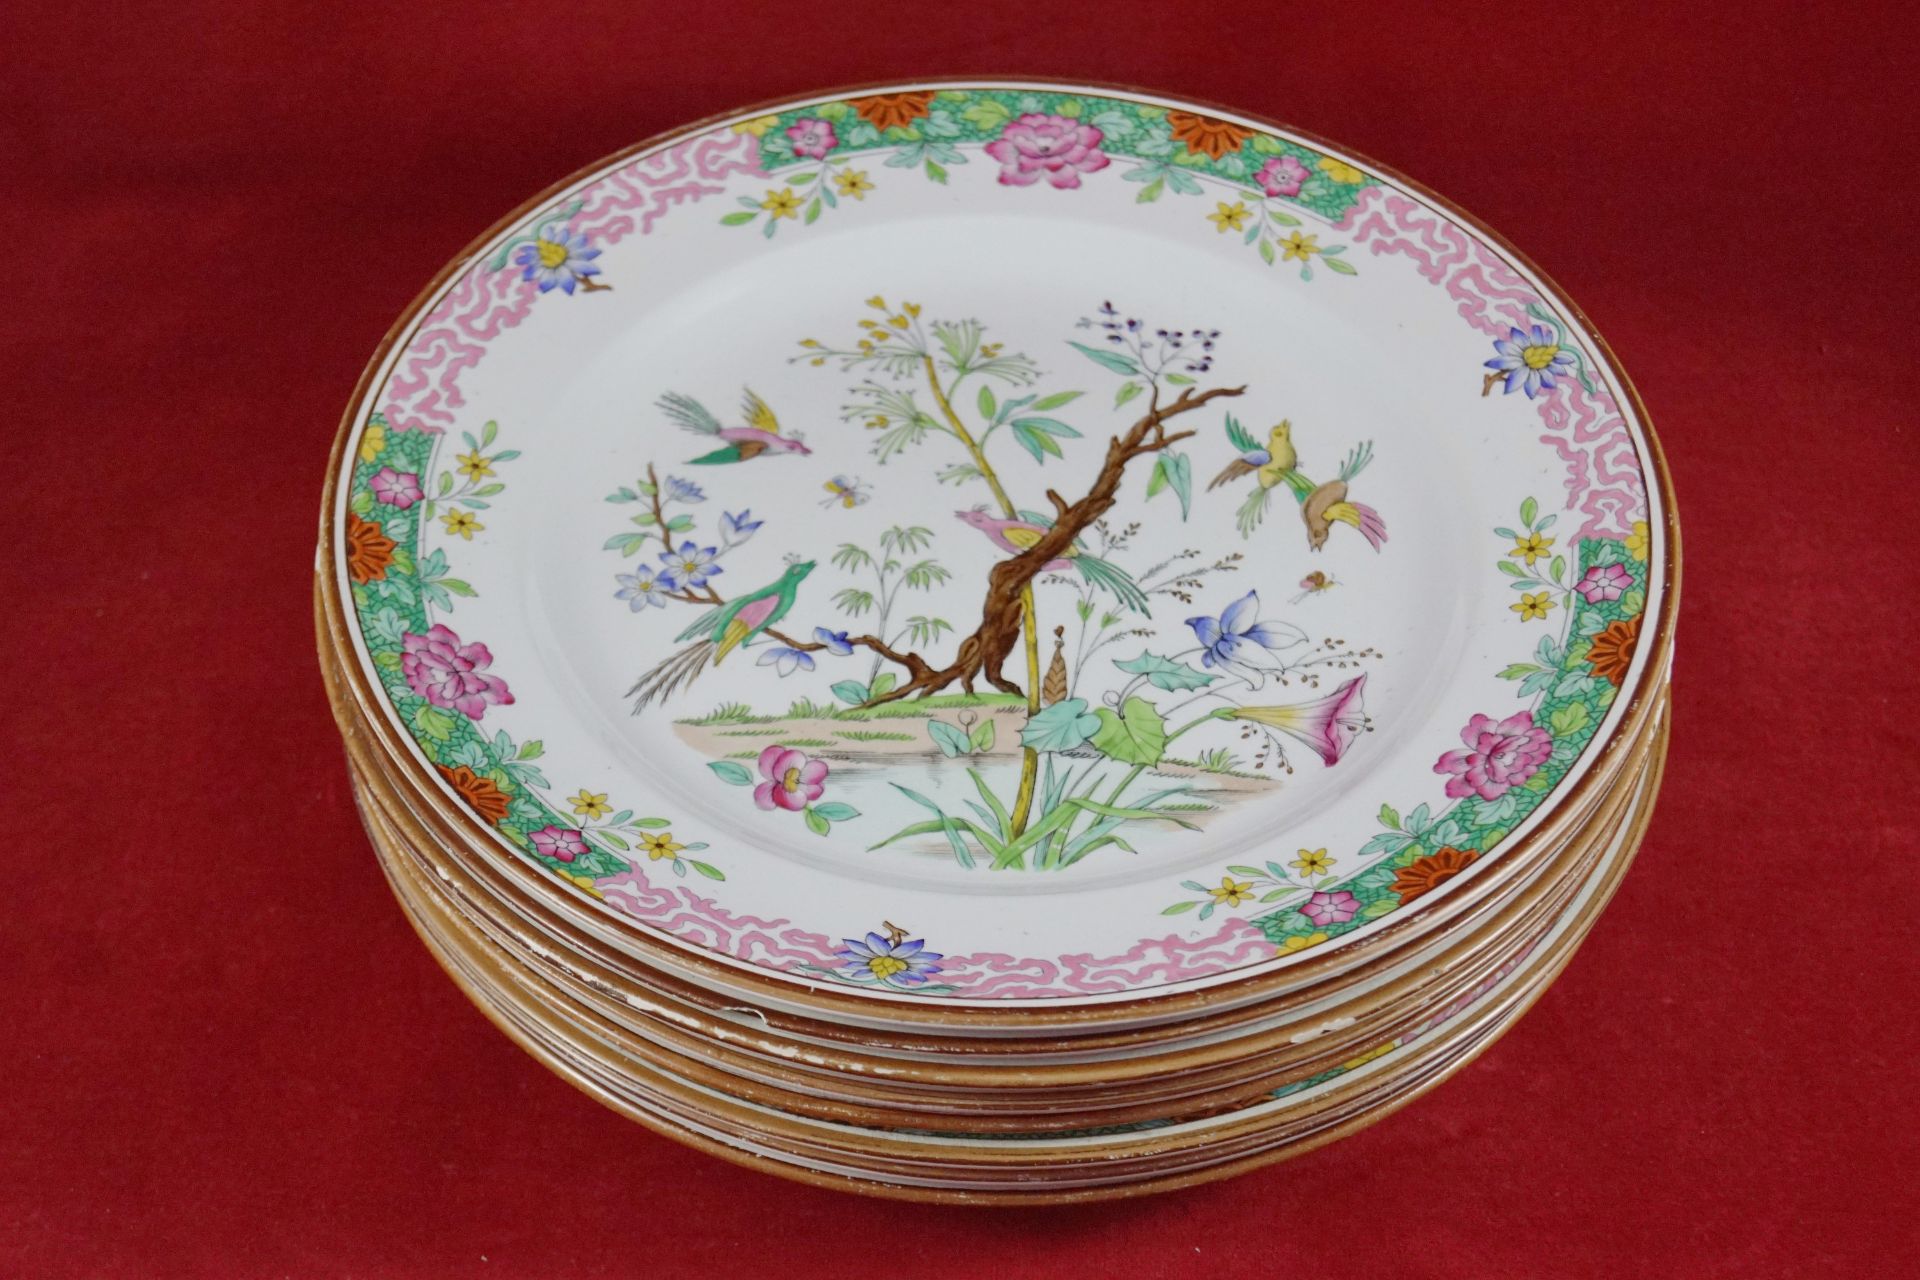 Acht Speiseteller aus Porzellan Mit chinesischer Malerei, Durchmesser 26 cm, Drei Teller mit